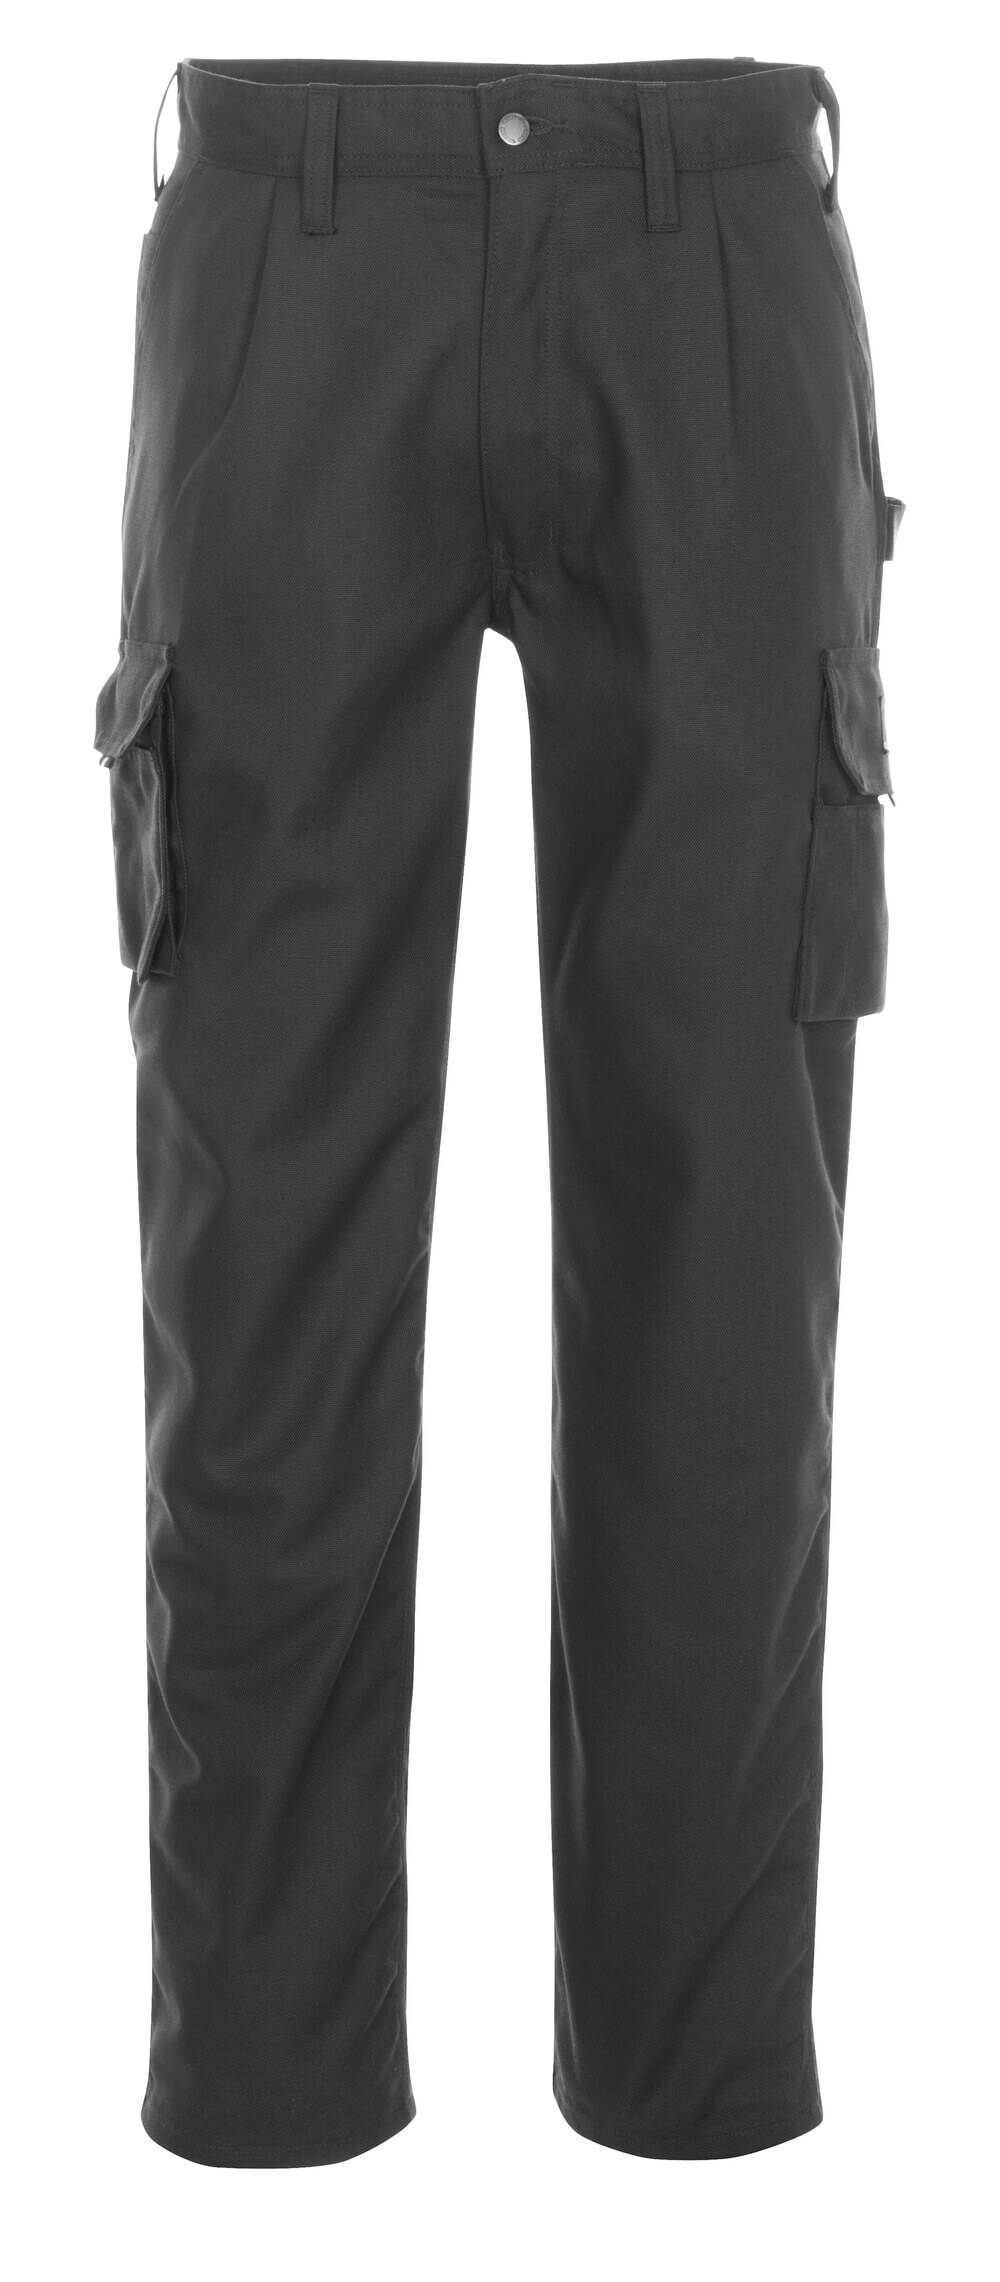 Hose mit Schenkeltaschen HARDWEAR Hose mit Schenkeltaschen in Farbe Schwarz